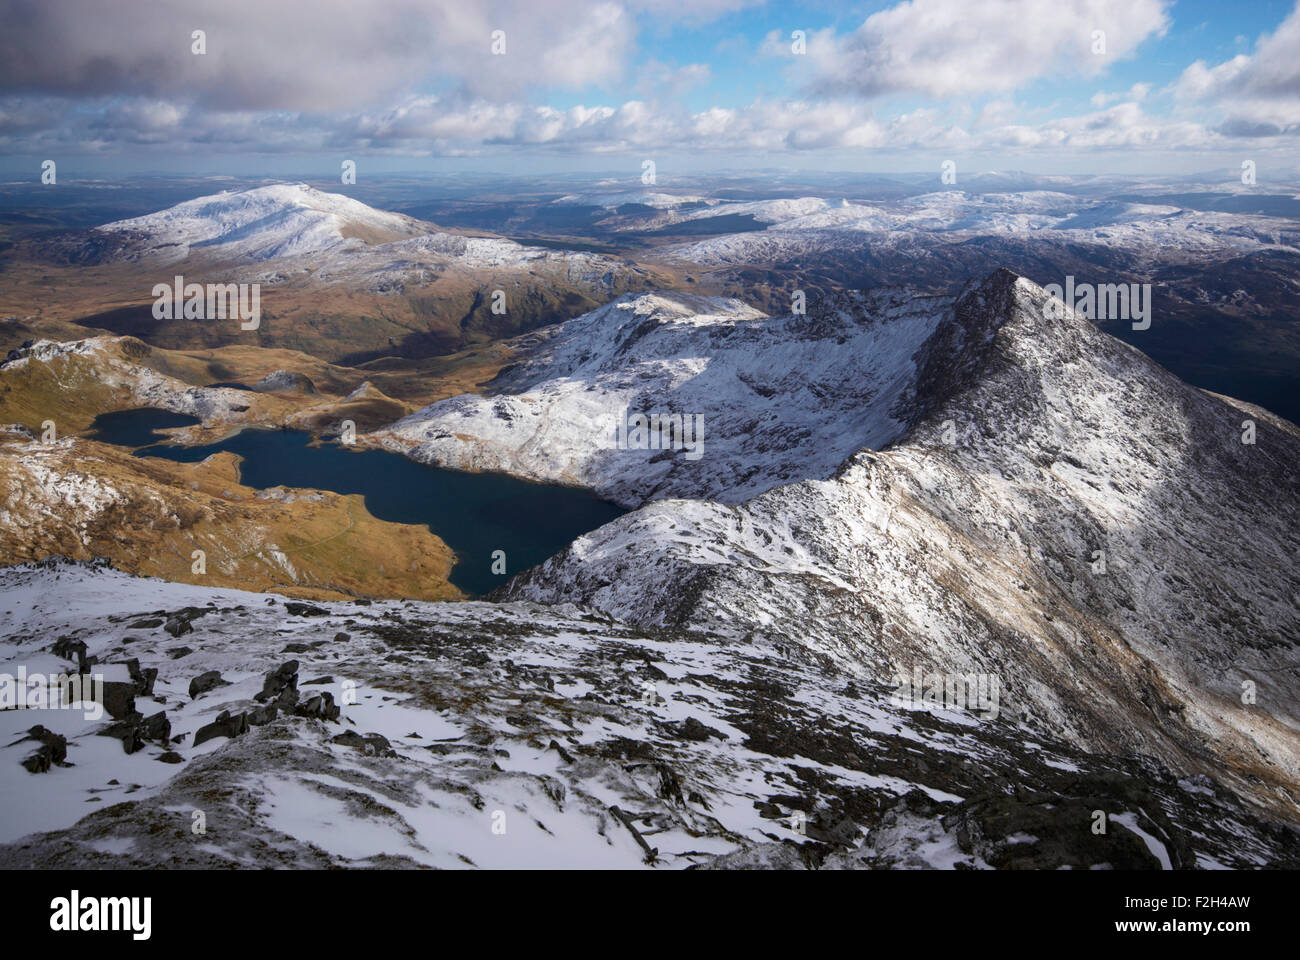 La vista desde la cima cubierta de nieve del Snowdon en el Parque Nacional de Snowdonia, Gales, Reino Unido Foto de stock